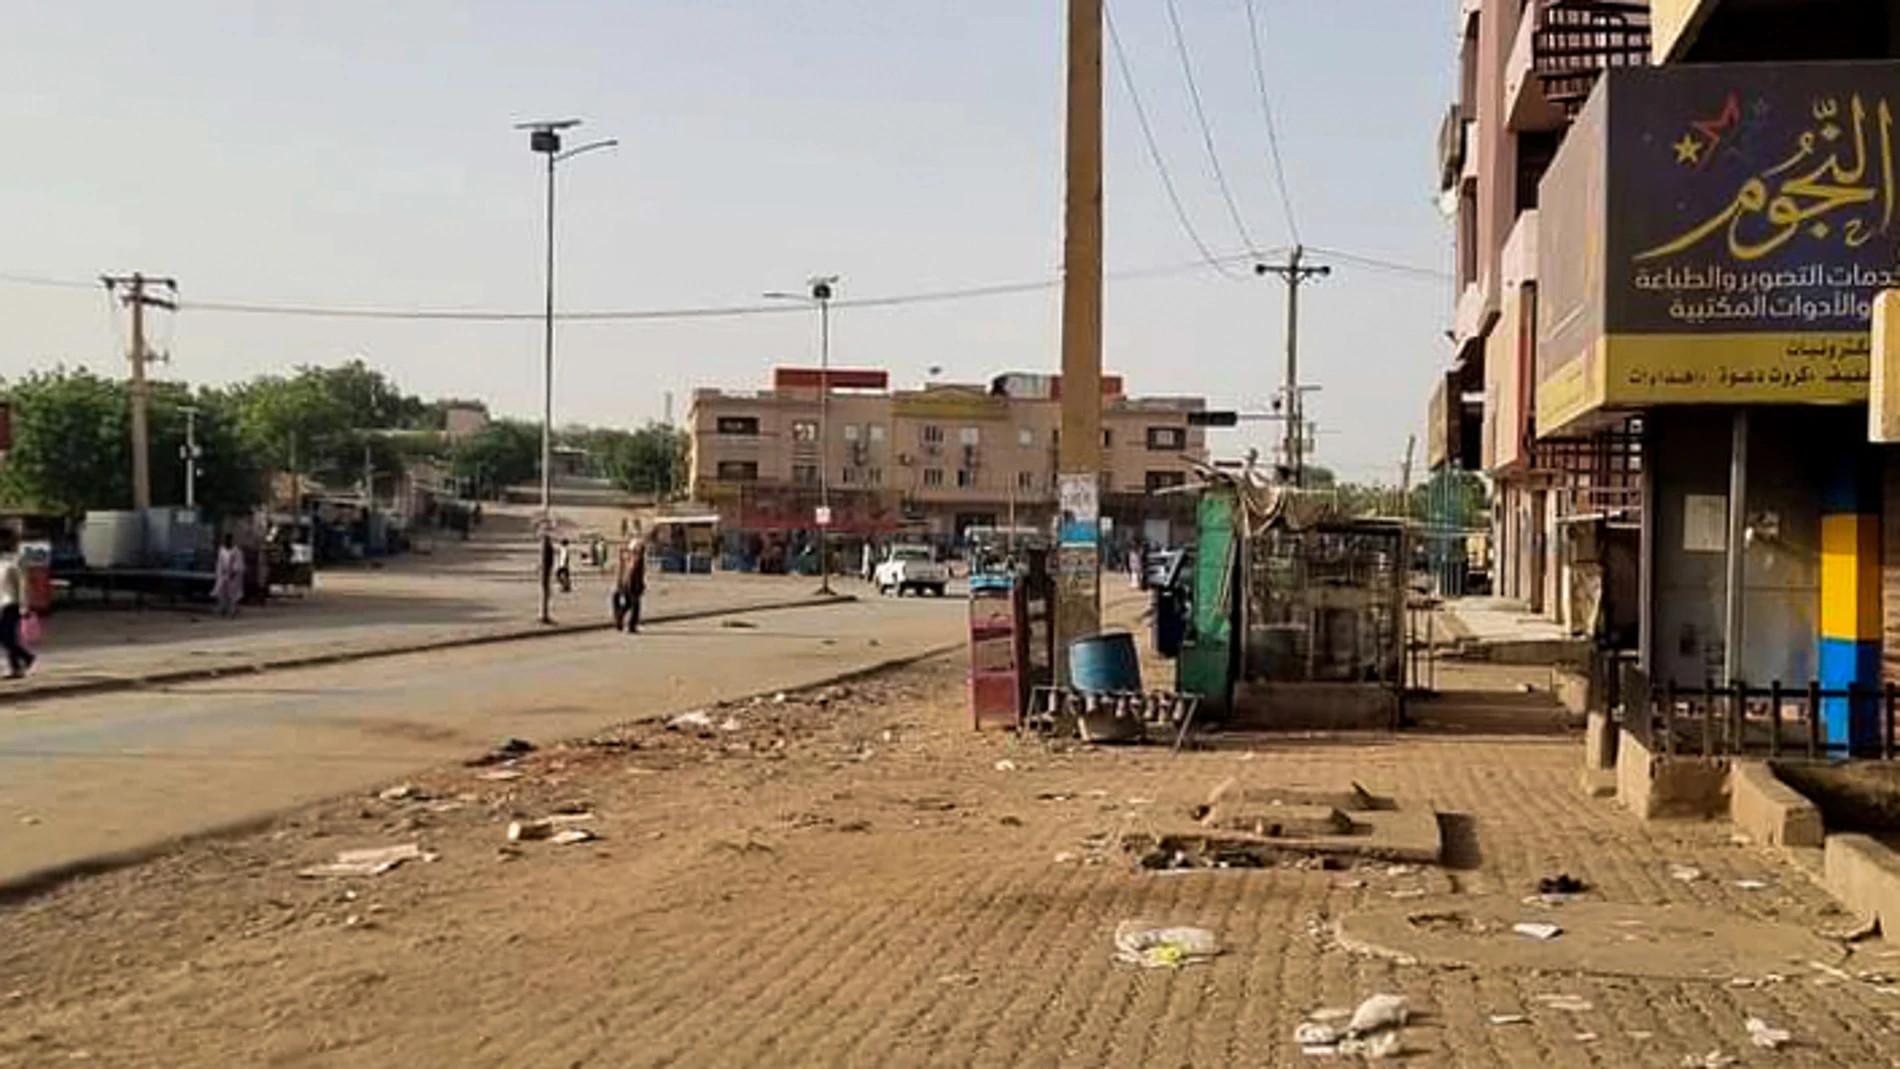 Sudán.- La ONU dice que la escasez de alimentos, agua y medicina es "extremadamente aguda" en Jartum y sus alrededores